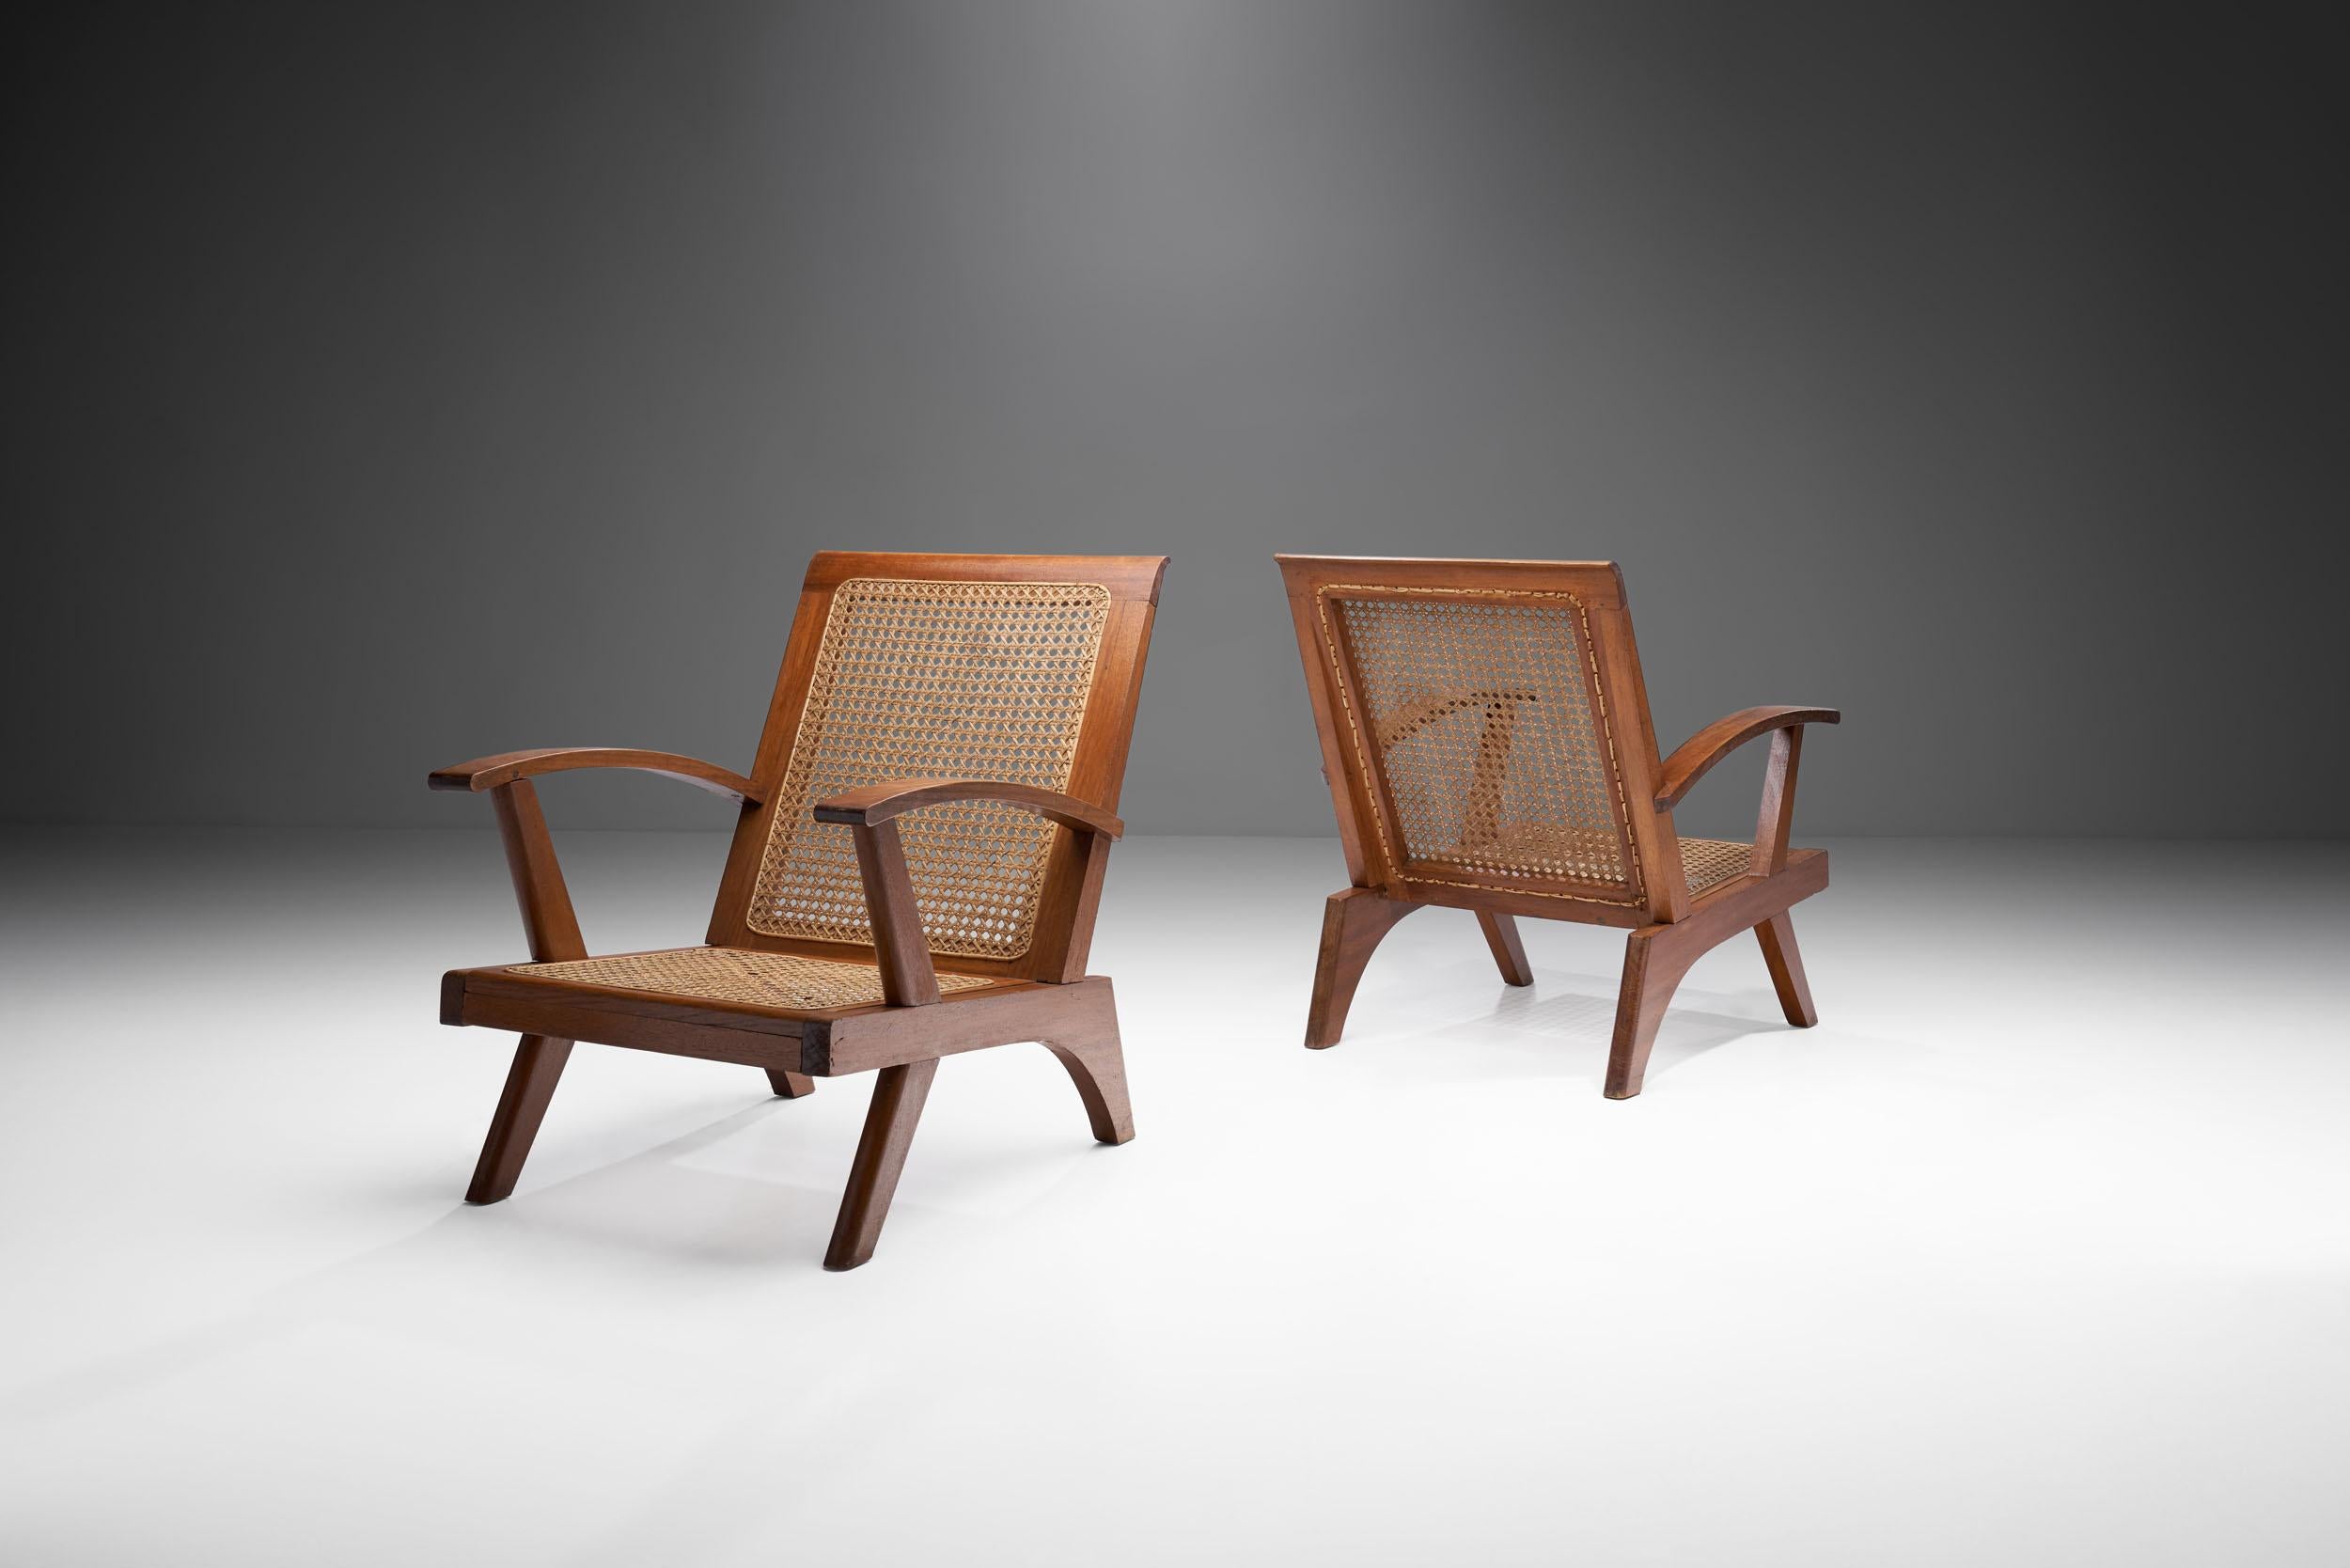 Cette paire de fauteuils français du milieu du siècle combine un corps structurel visuellement étonnant avec une technique de cannage experte et des matériaux de haute qualité. 

Comme au Royaume-Uni et dans une grande partie de l'Europe, la France